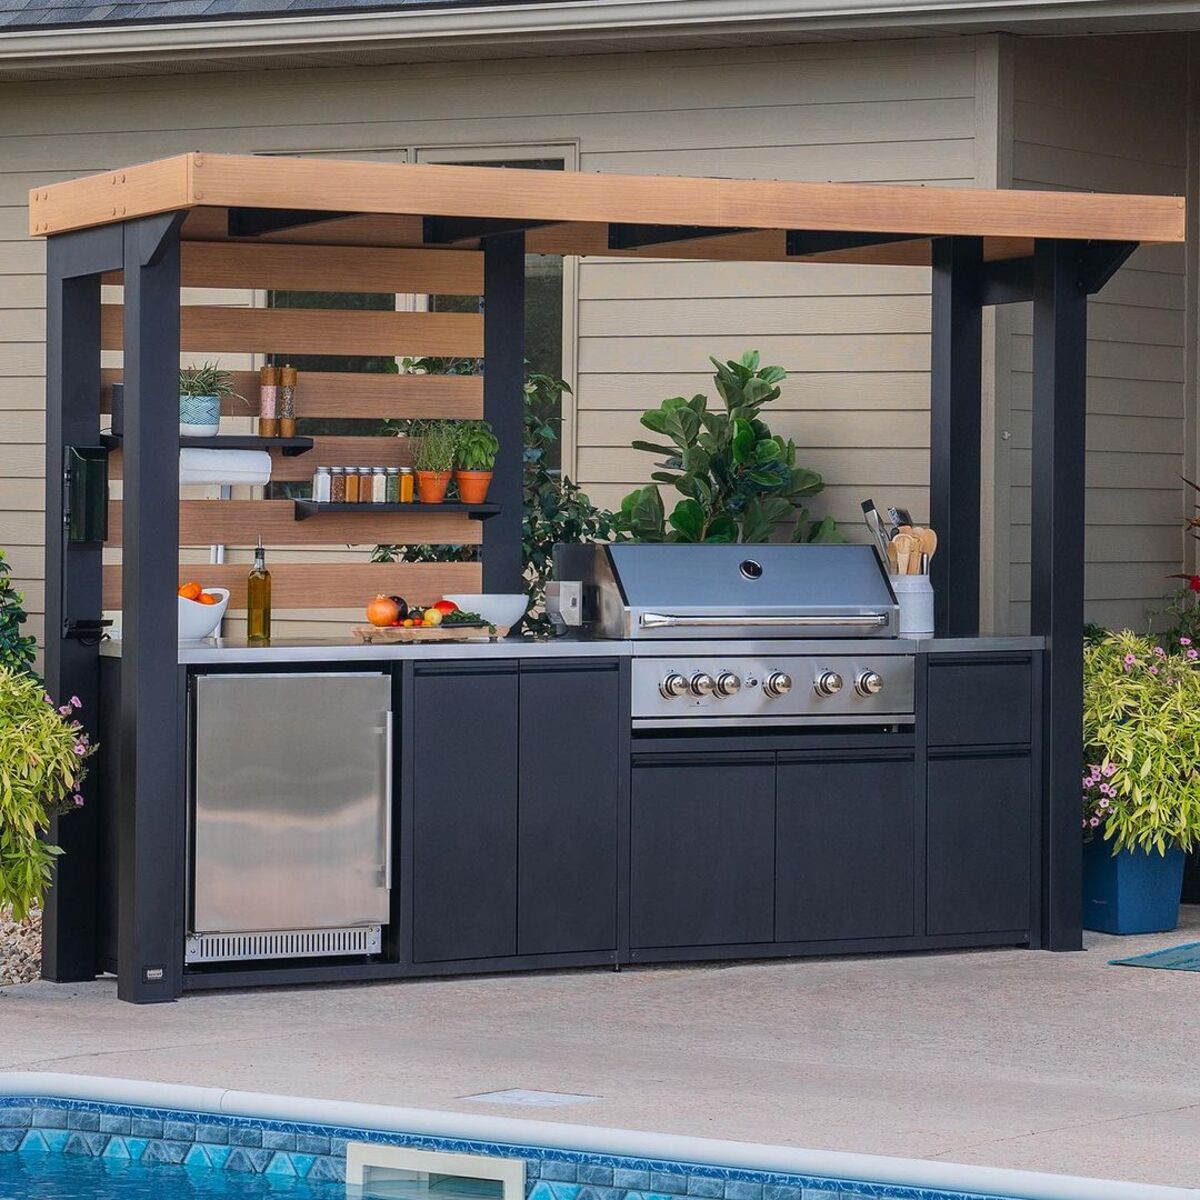 17 patio kitchen ideas outdoor 5